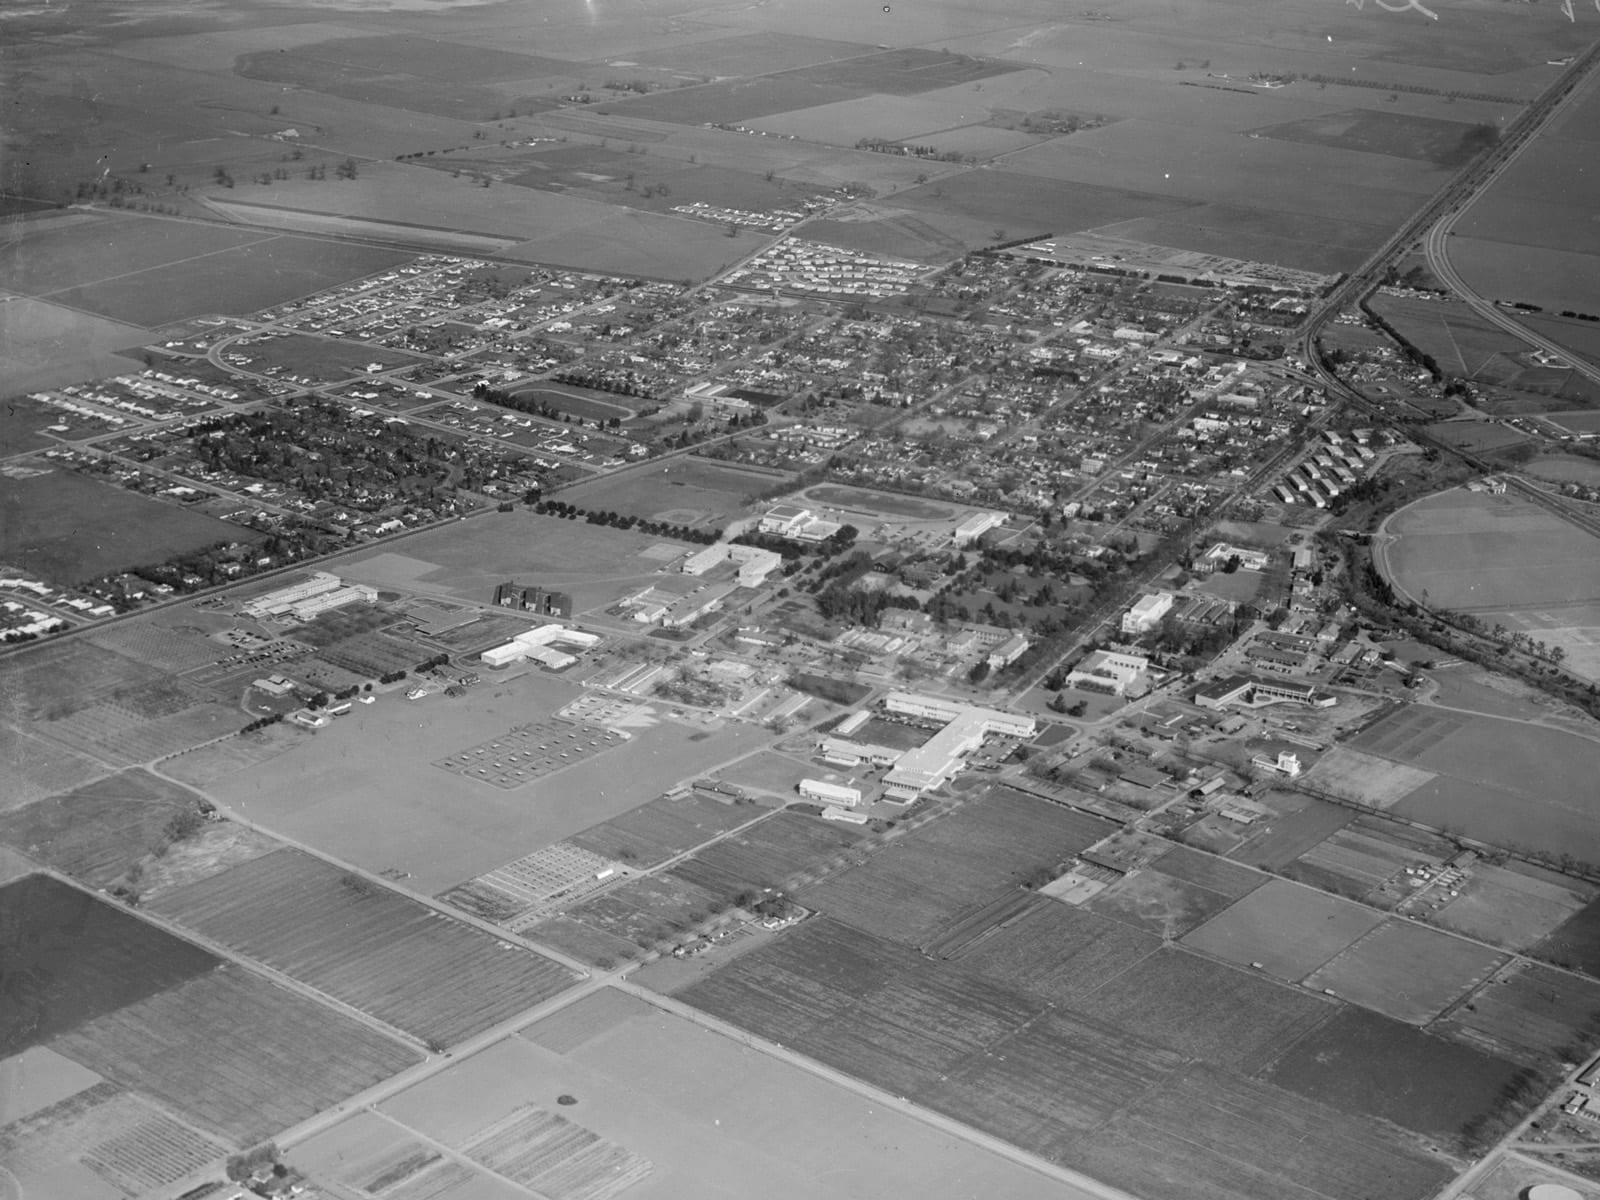 Aerial view of Davis, looking east, 1953